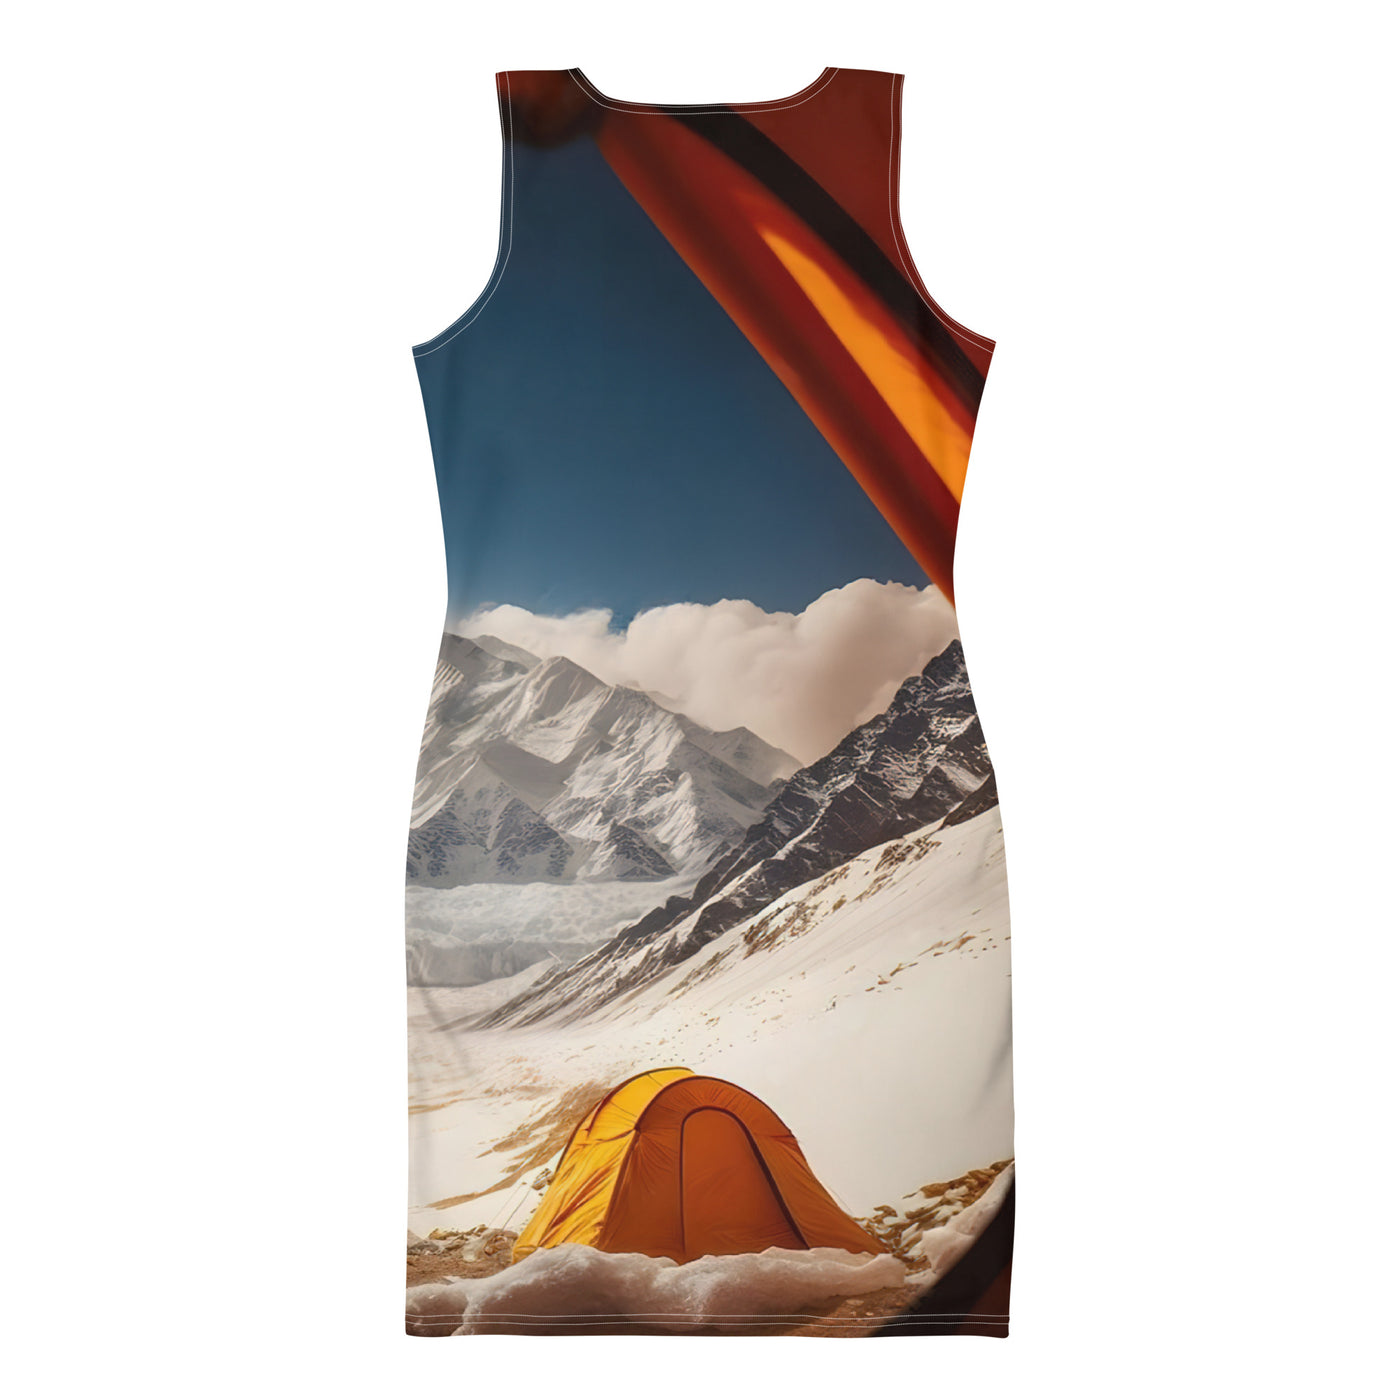 Foto aus dem Zelt - Berge und Zelte im Hintergrund - Tagesaufnahme - Langes Damen Kleid (All-Over Print) camping xxx